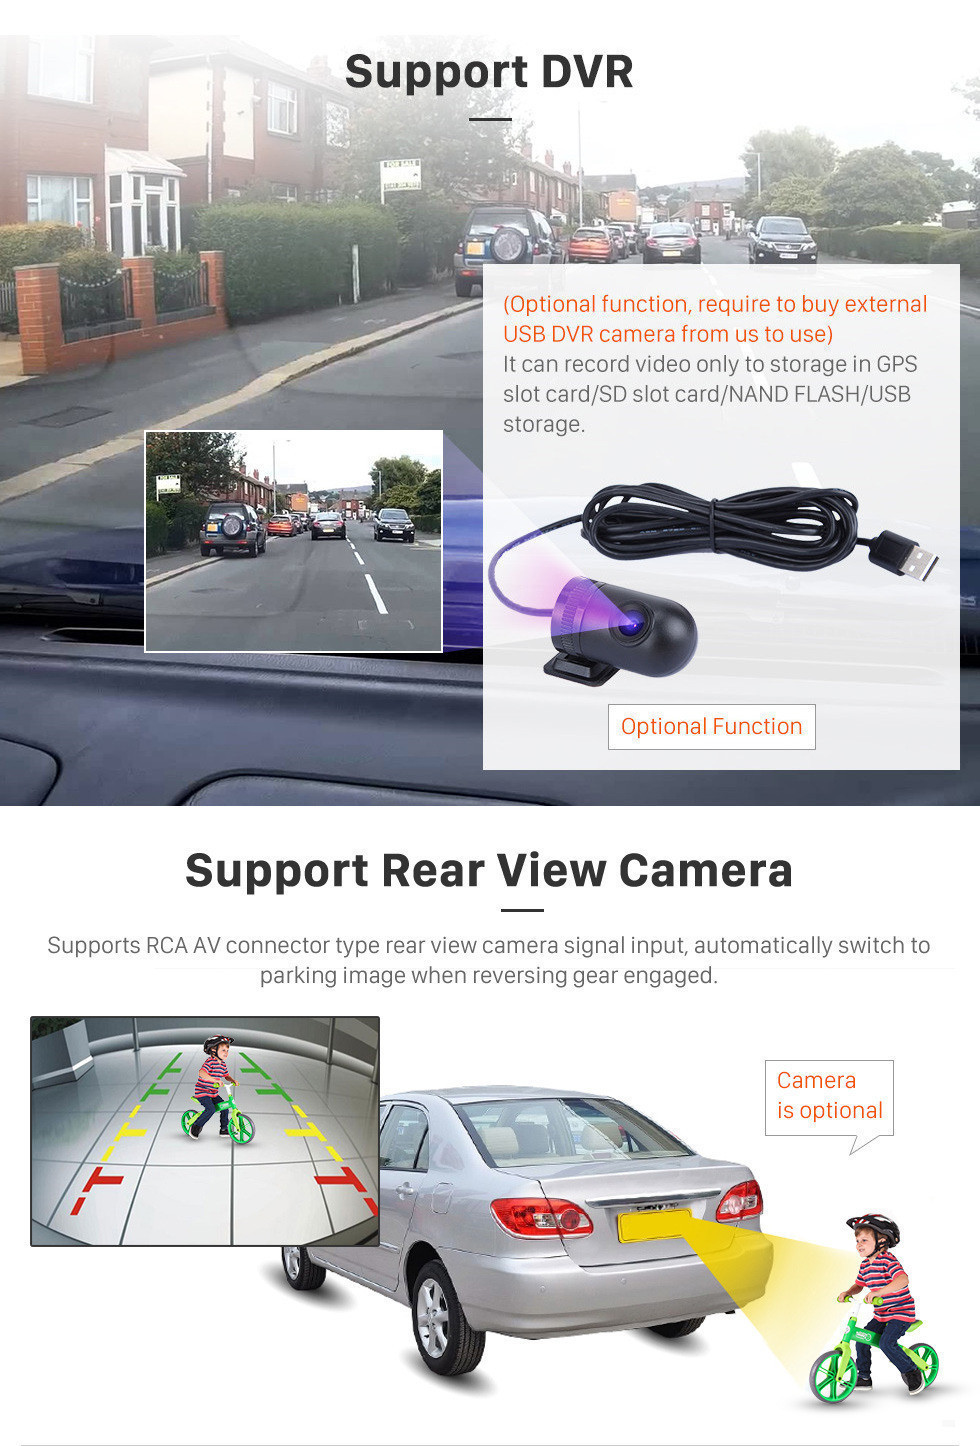 Seicane 10.1 polegada HD Touchscreen Android 9.0 Rádio para 2012-2015 Volkswagen SAGITAR GPS Navegação GPS Bluetooth WI-FI SWC USB Carplay Retrovisor OBD2